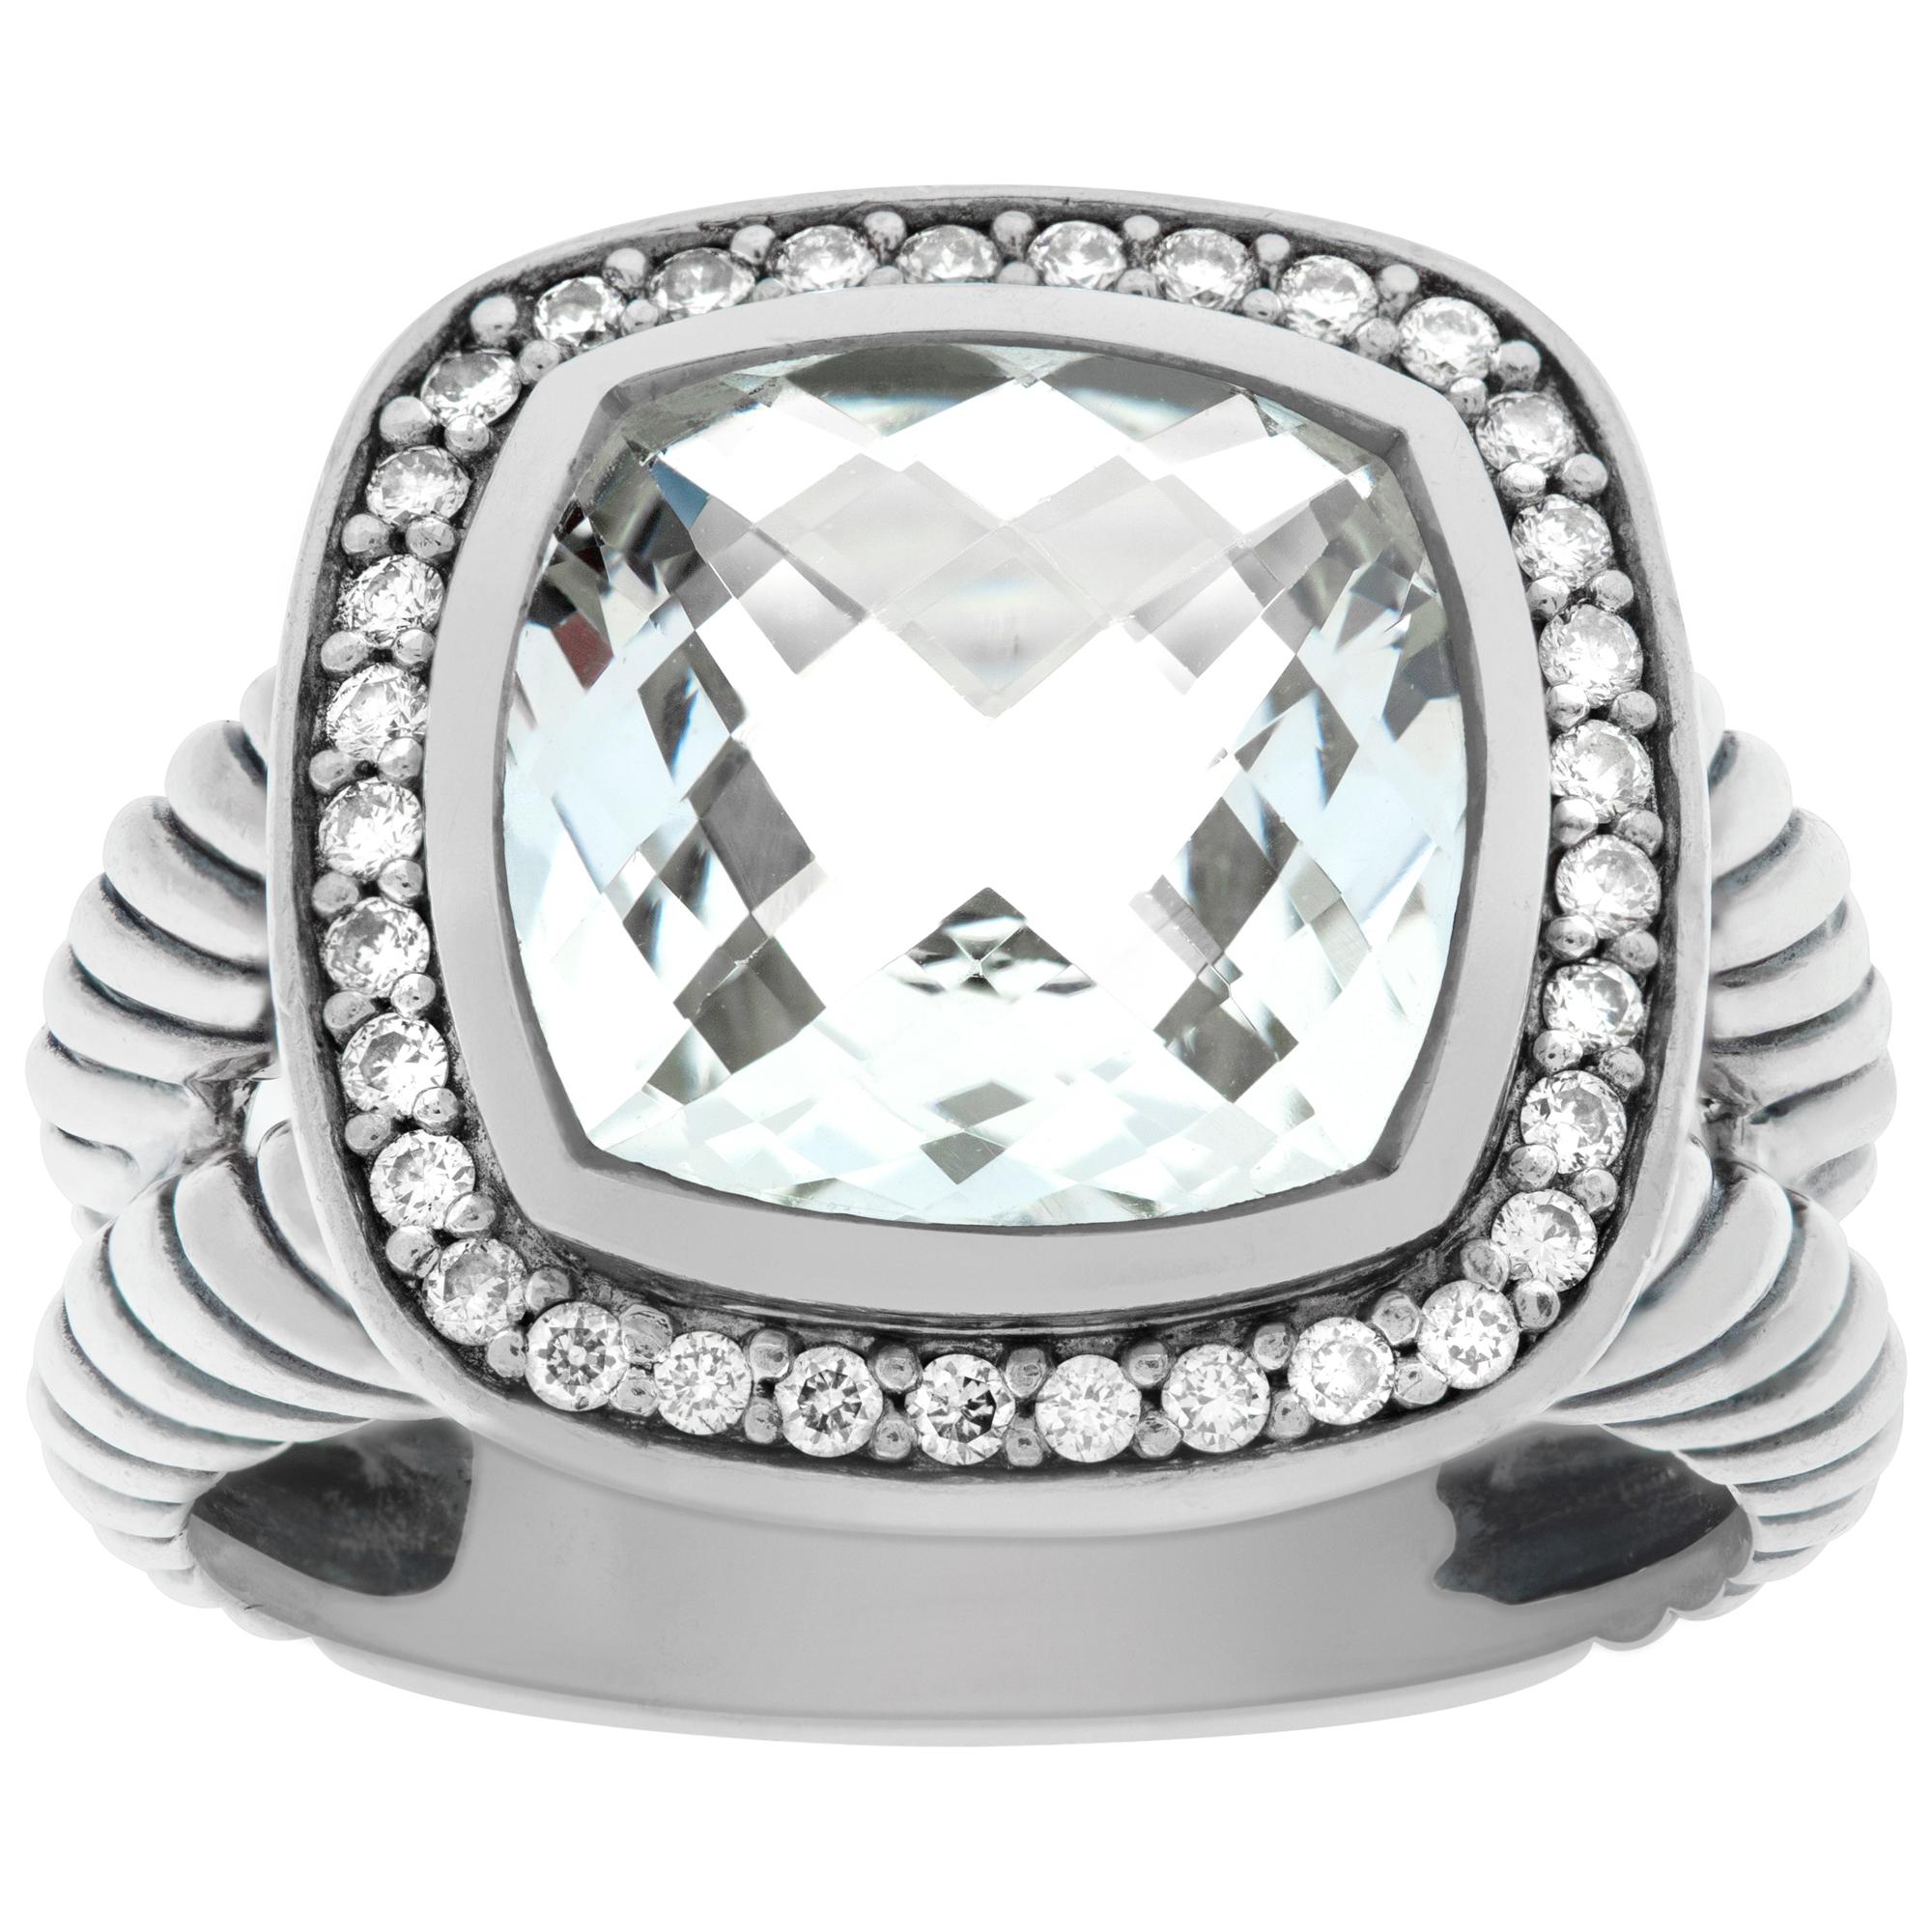 David Yurman Albion Prasiolith Ring aus Sterlingsilber mit einem Halo aus runden, gepflasterten Diamanten (0,22 ct). Der Prasoilith wiegt 9,2 Karat. Größe 6,5 Dieser David Yurman Ring ist derzeit Größe 6,5 und einige Elemente können Größe nach oben